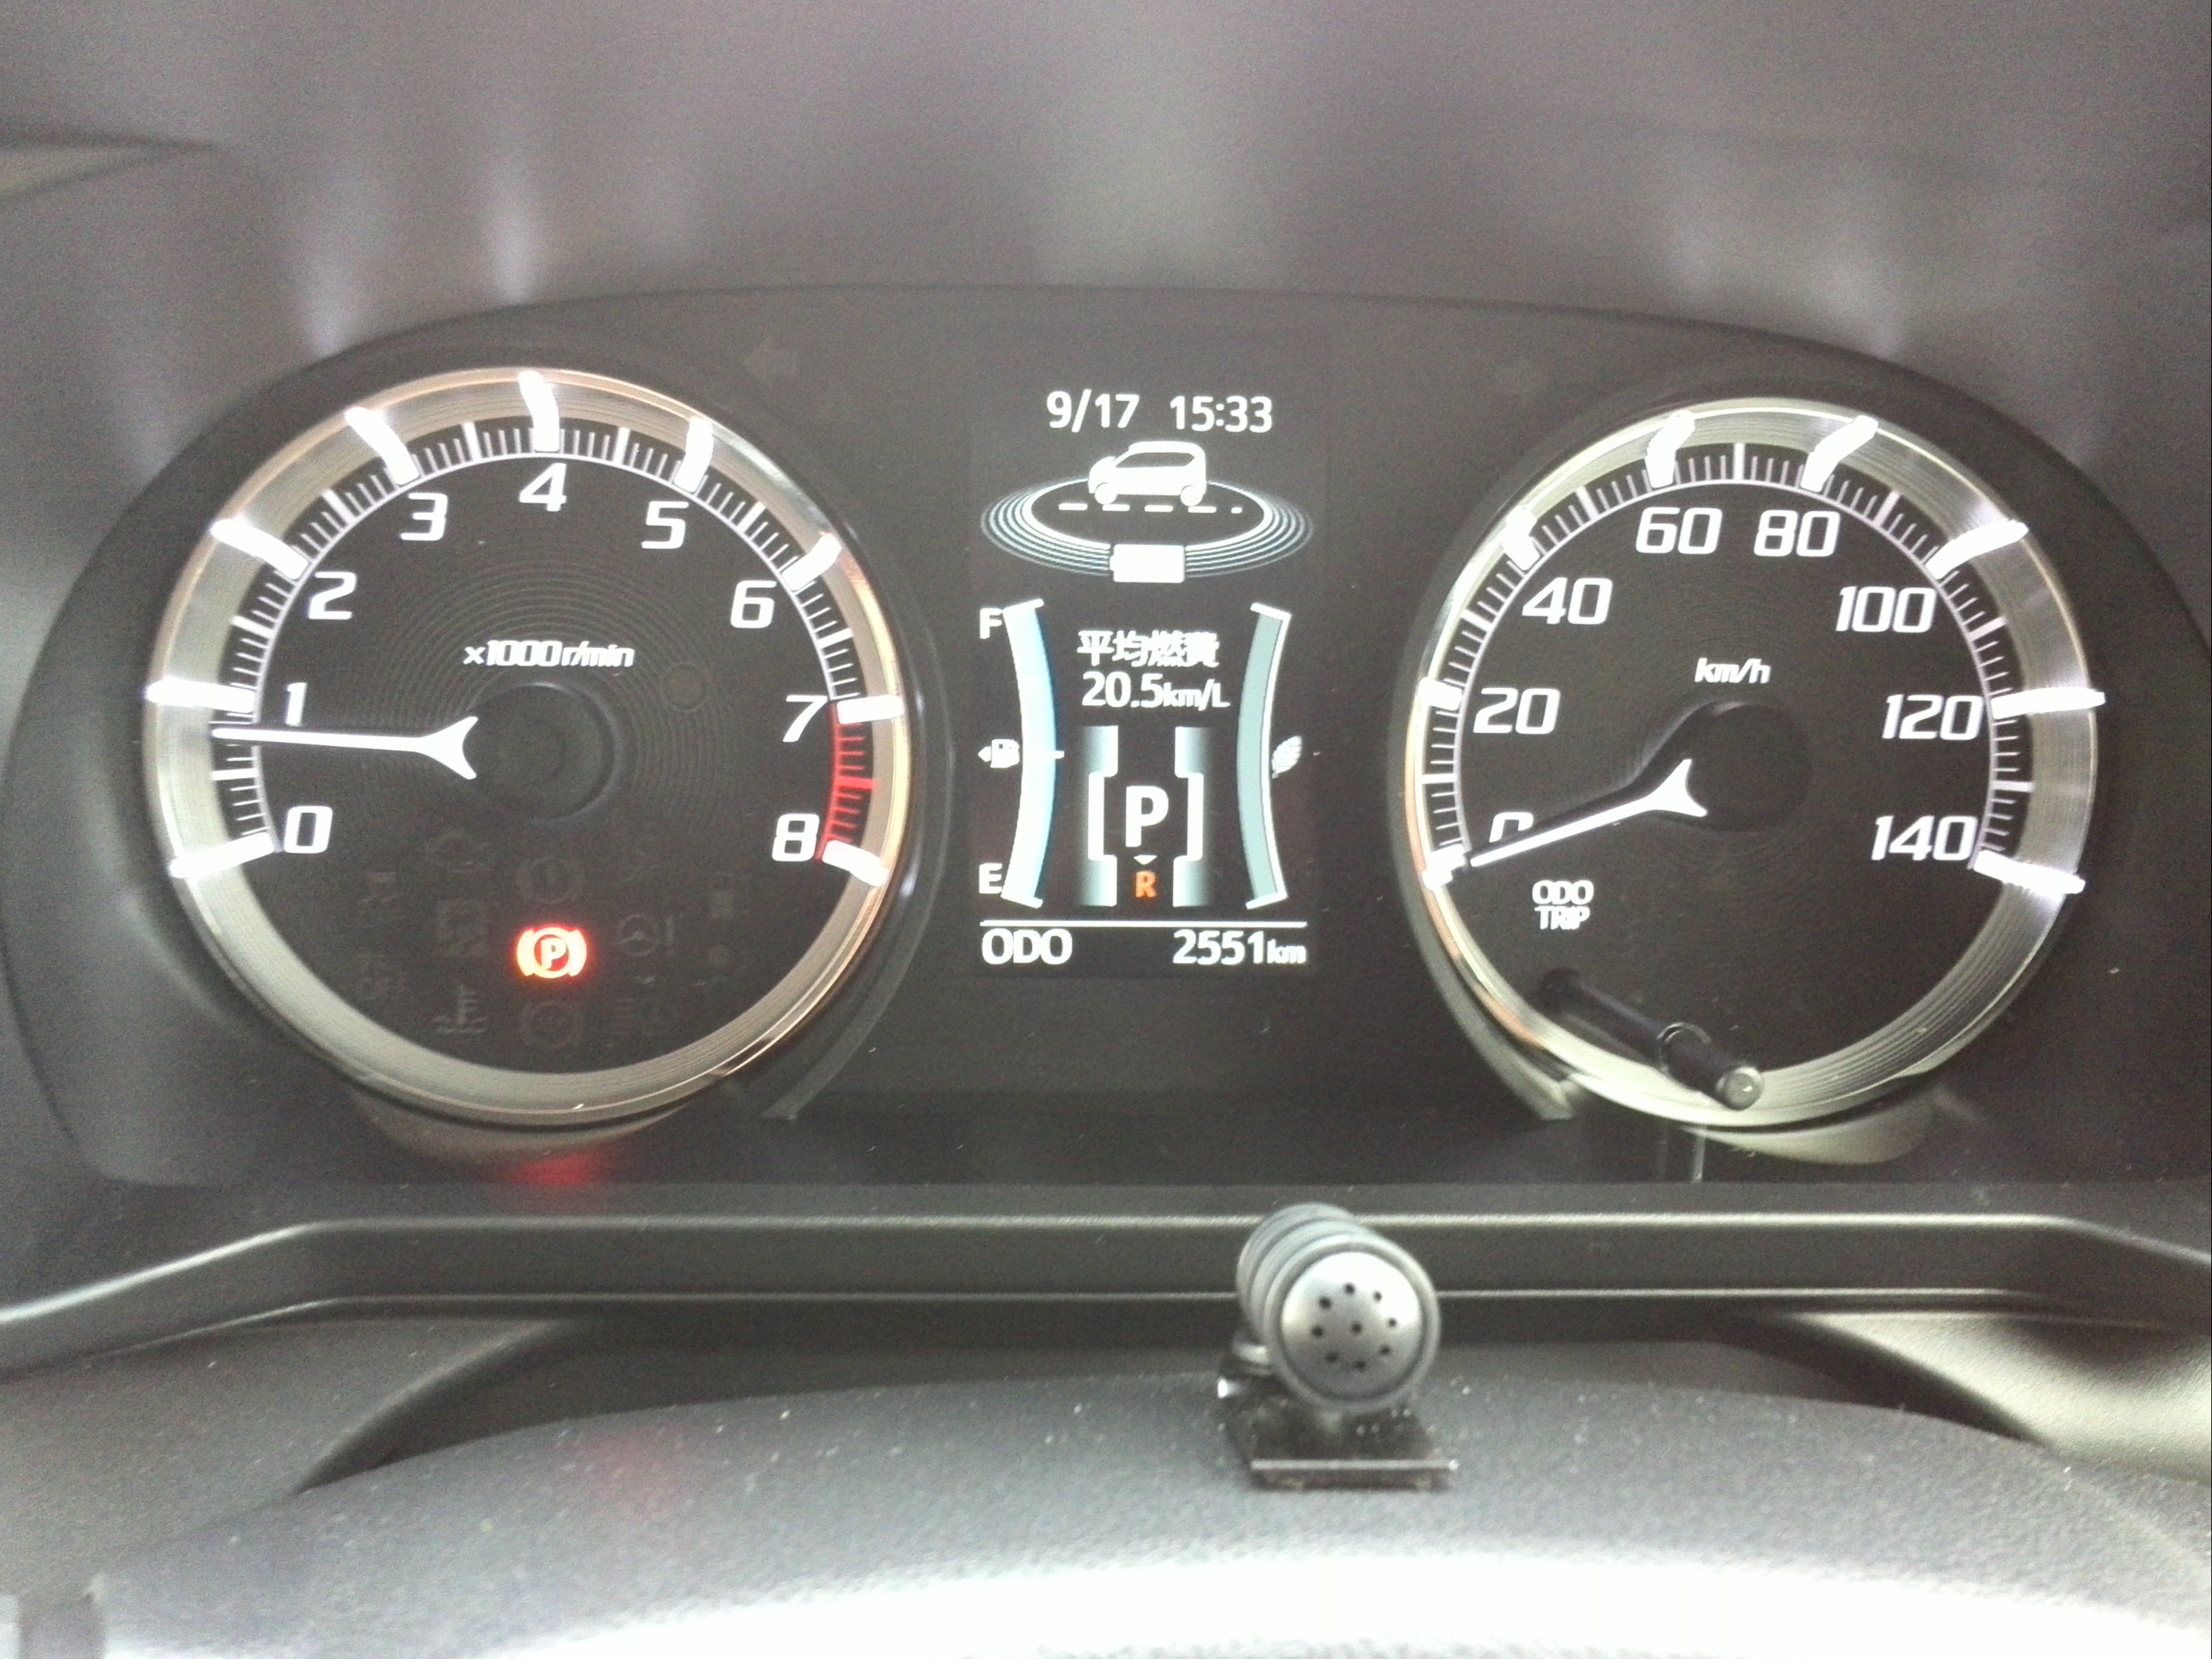 MOVE CUSTOM RS HYPER SA3 4WD 燃費計の値は20.5km/L